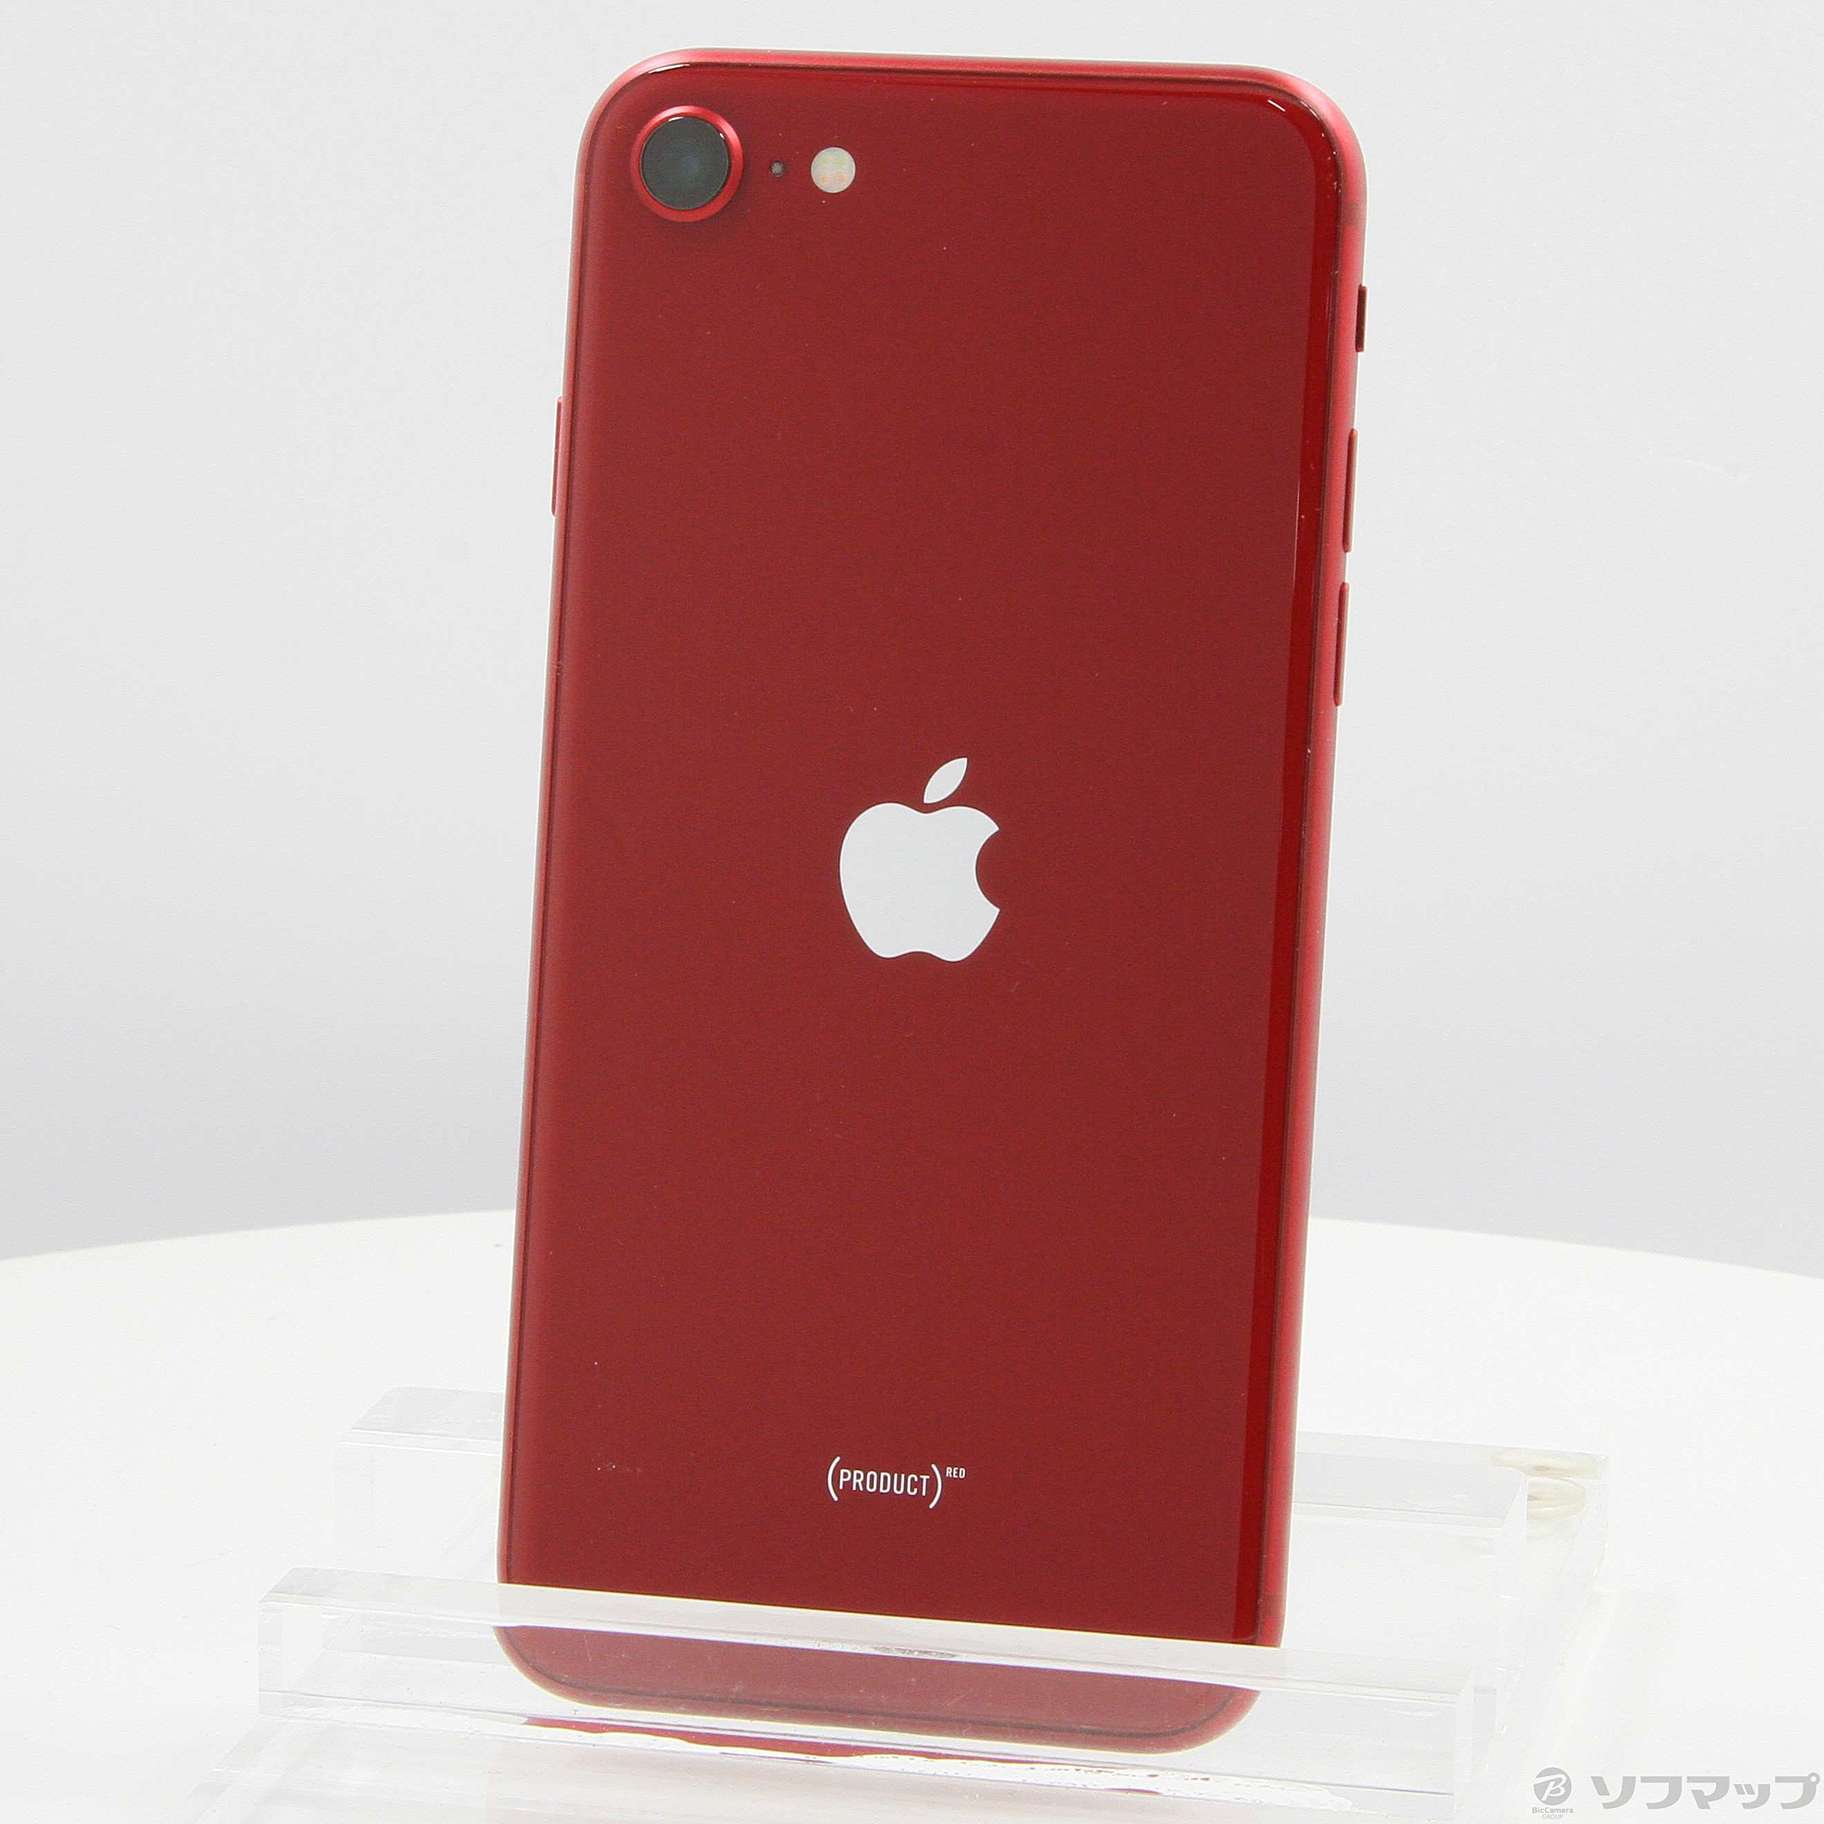 カラーPiPhone SE 第3世代 RED 128GB